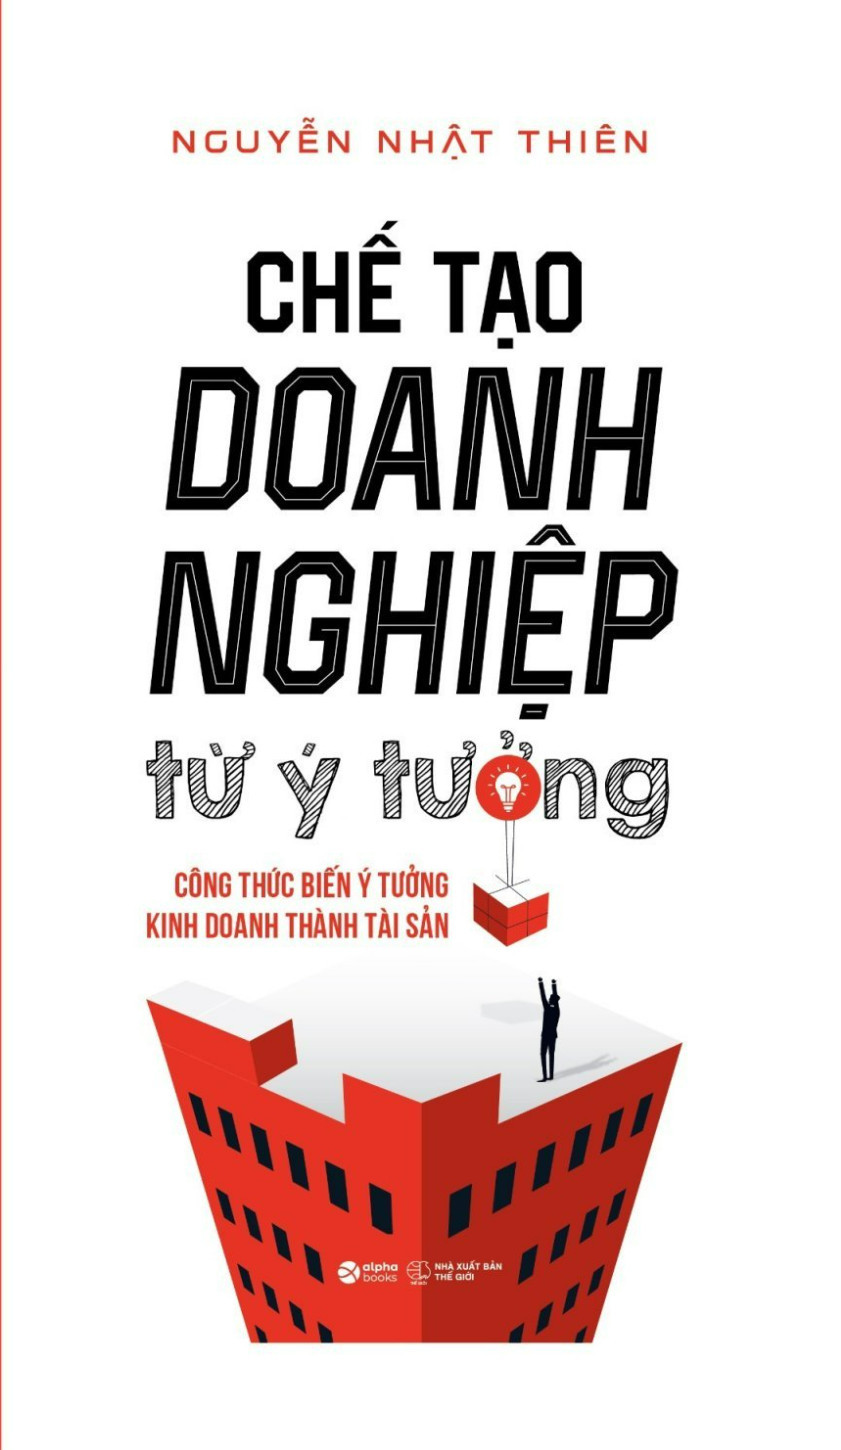 Hình ảnh CHẾ TẠO DOANH NGHIỆP TỪ Ý TƯỞNG - Công Thức Biến Ý Tưởng Kinh Doanh Thành Tài Sản - Nguyễn Nhật Thiên